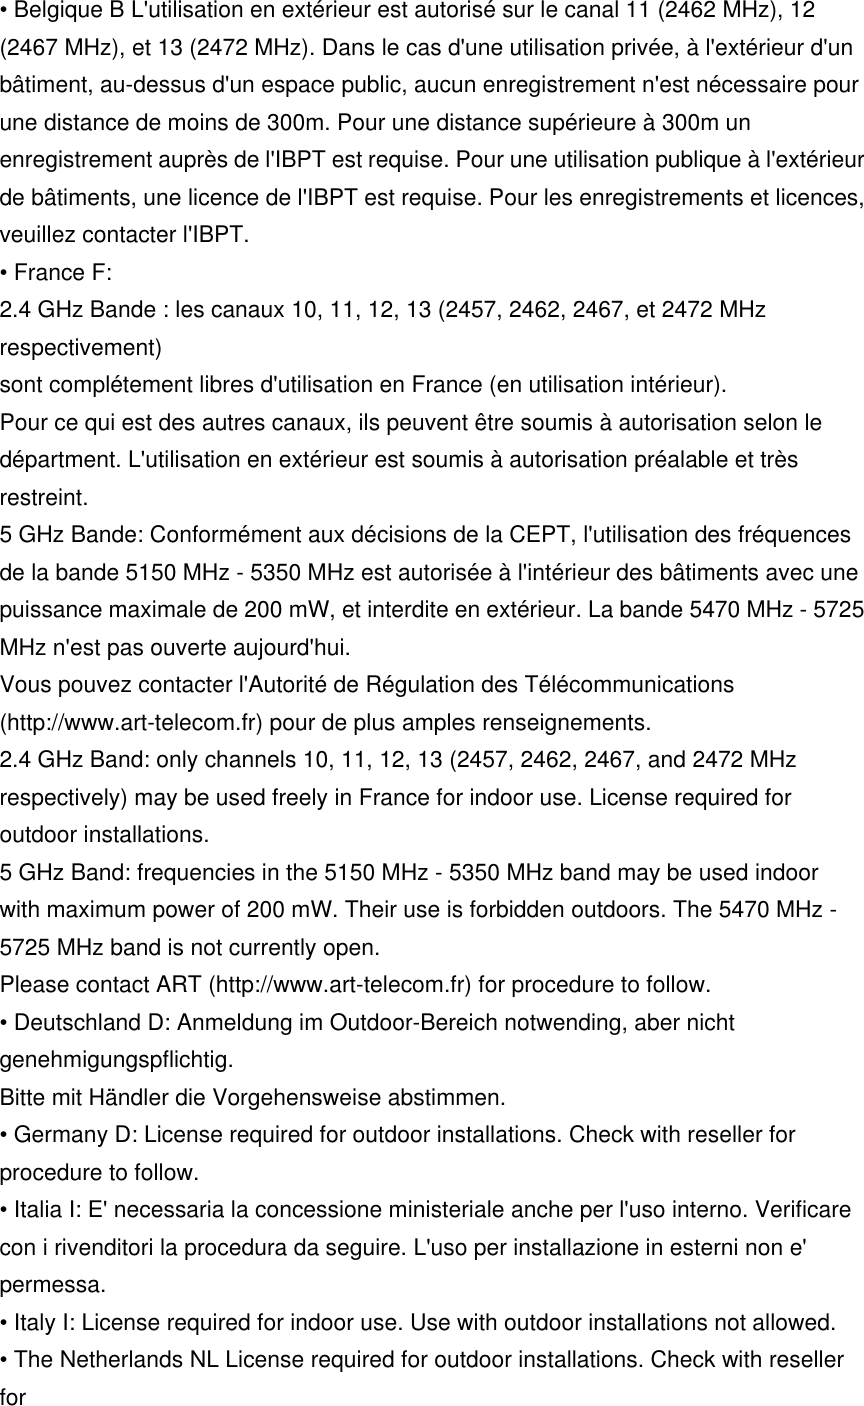 • Belgique B L&apos;utilisation en extérieur est autorisé sur le canal 11 (2462 MHz), 12 (2467 MHz), et 13 (2472 MHz). Dans le cas d&apos;une utilisation privée, à l&apos;extérieur d&apos;un bâtiment, au-dessus d&apos;un espace public, aucun enregistrement n&apos;est nécessaire pour une distance de moins de 300m. Pour une distance supérieure à 300m un enregistrement auprès de l&apos;IBPT est requise. Pour une utilisation publique à l&apos;extérieur de bâtiments, une licence de l&apos;IBPT est requise. Pour les enregistrements et licences, veuillez contacter l&apos;IBPT. • France F: 2.4 GHz Bande : les canaux 10, 11, 12, 13 (2457, 2462, 2467, et 2472 MHz respectivement) sont complétement libres d&apos;utilisation en France (en utilisation intérieur). Pour ce qui est des autres canaux, ils peuvent être soumis à autorisation selon le départment. L&apos;utilisation en extérieur est soumis à autorisation préalable et très restreint. 5 GHz Bande: Conformément aux décisions de la CEPT, l&apos;utilisation des fréquences de la bande 5150 MHz - 5350 MHz est autorisée à l&apos;intérieur des bâtiments avec une puissance maximale de 200 mW, et interdite en extérieur. La bande 5470 MHz - 5725 MHz n&apos;est pas ouverte aujourd&apos;hui. Vous pouvez contacter l&apos;Autorité de Régulation des Télécommunications (http://www.art-telecom.fr) pour de plus amples renseignements. 2.4 GHz Band: only channels 10, 11, 12, 13 (2457, 2462, 2467, and 2472 MHz respectively) may be used freely in France for indoor use. License required for outdoor installations. 5 GHz Band: frequencies in the 5150 MHz - 5350 MHz band may be used indoor with maximum power of 200 mW. Their use is forbidden outdoors. The 5470 MHz - 5725 MHz band is not currently open. Please contact ART (http://www.art-telecom.fr) for procedure to follow. • Deutschland D: Anmeldung im Outdoor-Bereich notwending, aber nicht genehmigungspflichtig. Bitte mit Händler die Vorgehensweise abstimmen. • Germany D: License required for outdoor installations. Check with reseller for procedure to follow. • Italia I: E&apos; necessaria la concessione ministeriale anche per l&apos;uso interno. Verificare con i rivenditori la procedura da seguire. L&apos;uso per installazione in esterni non e&apos; permessa. • Italy I: License required for indoor use. Use with outdoor installations not allowed. • The Netherlands NL License required for outdoor installations. Check with reseller for 